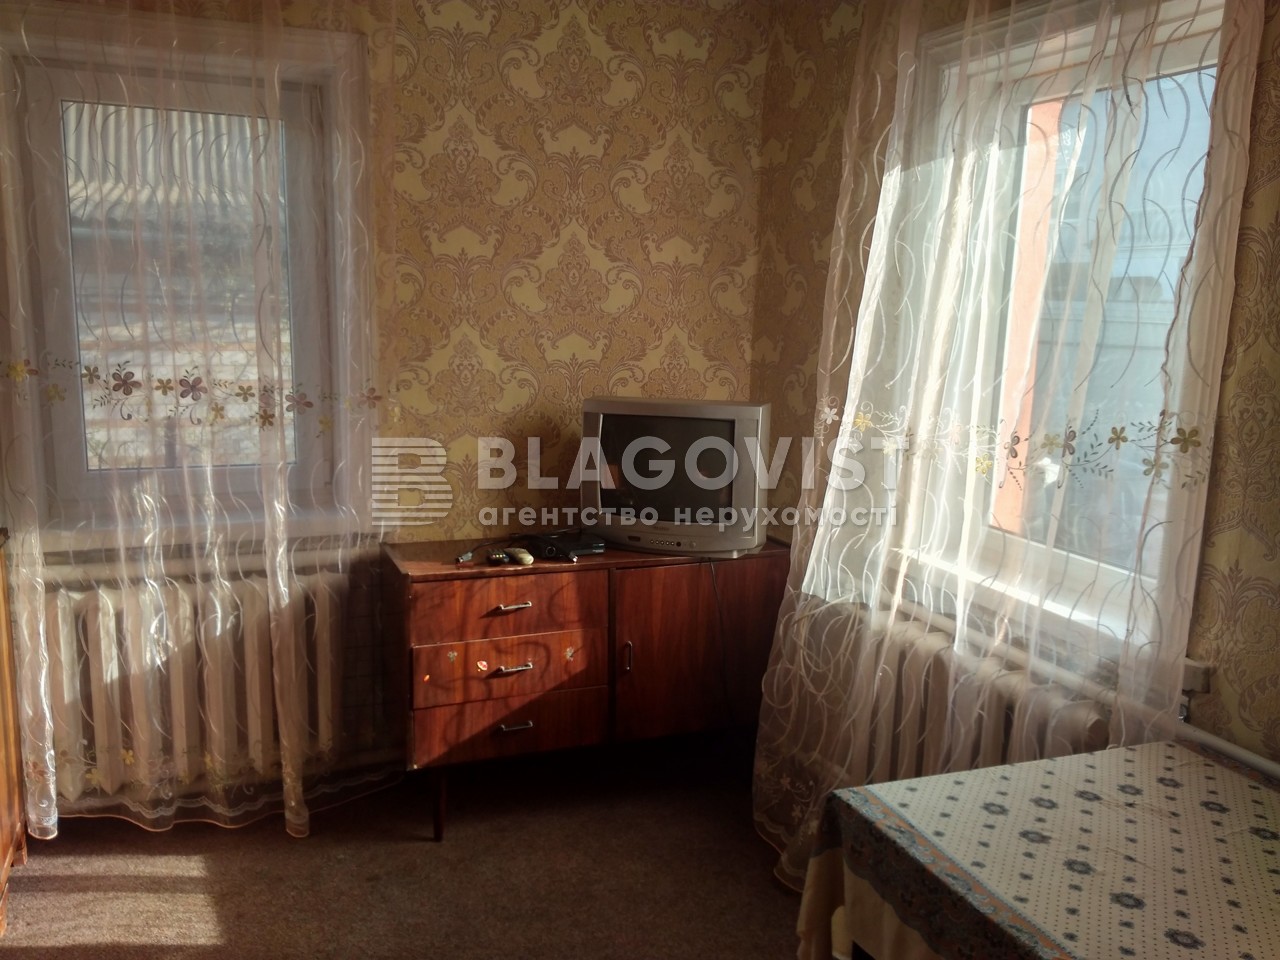 Дом R-24834, Слесарный пер., Киев - Фото 2